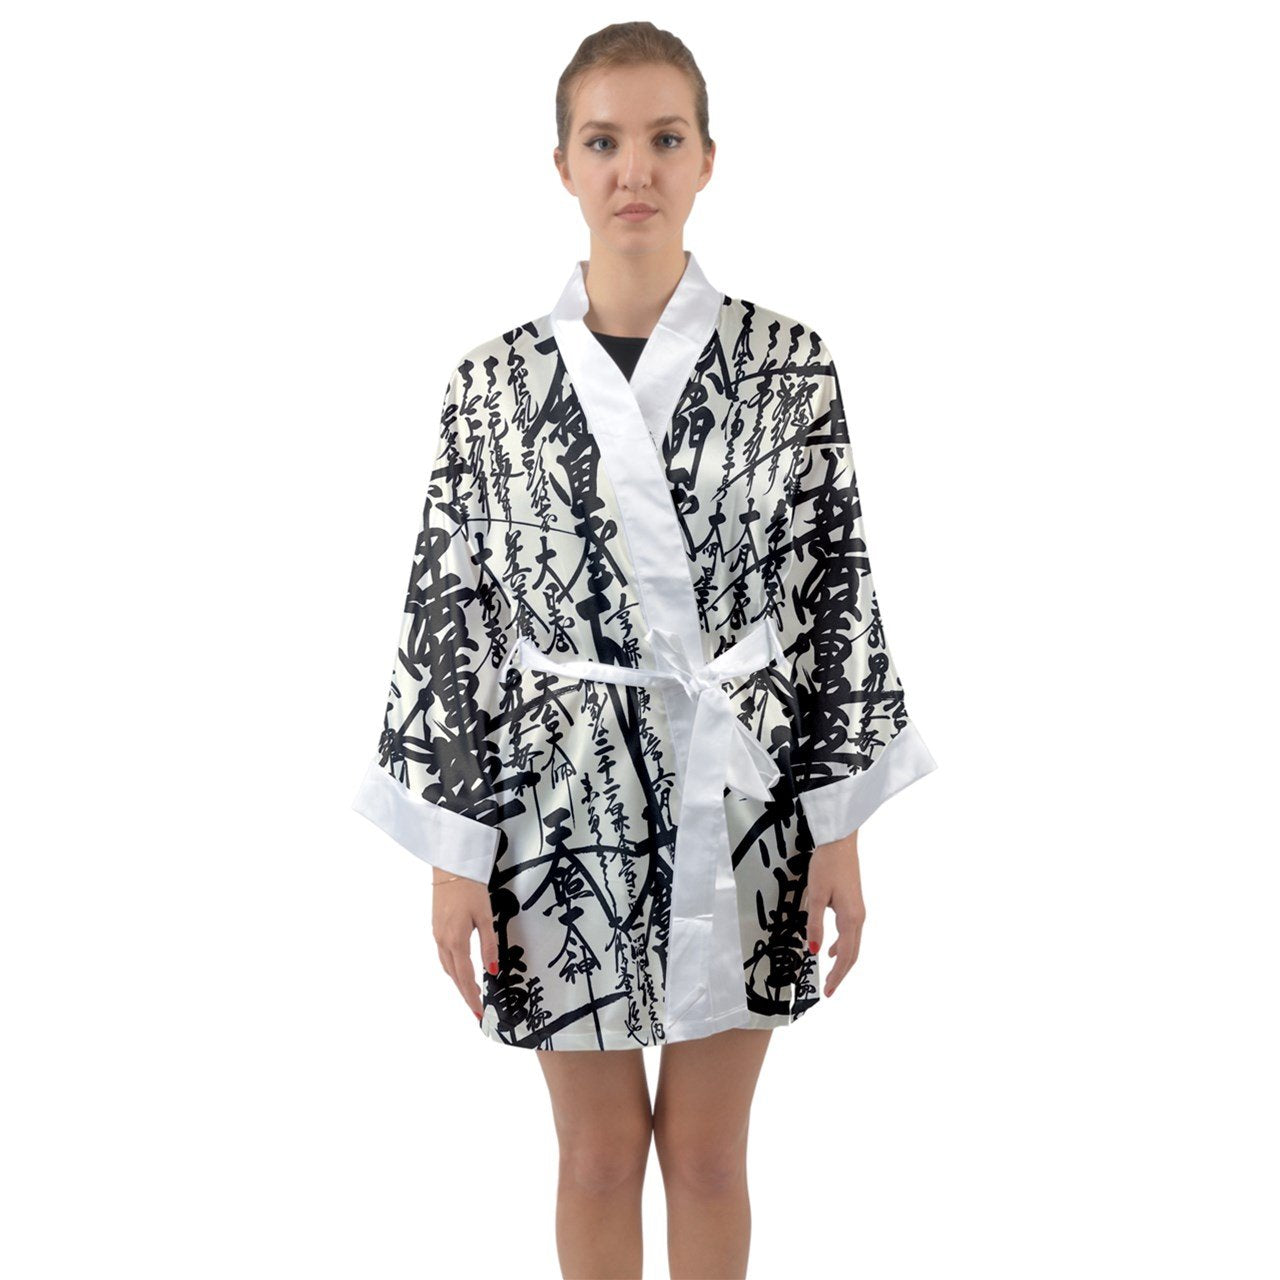 Satin Kimono Oriental Design Kimono Black And White Long Sleeve Kimono